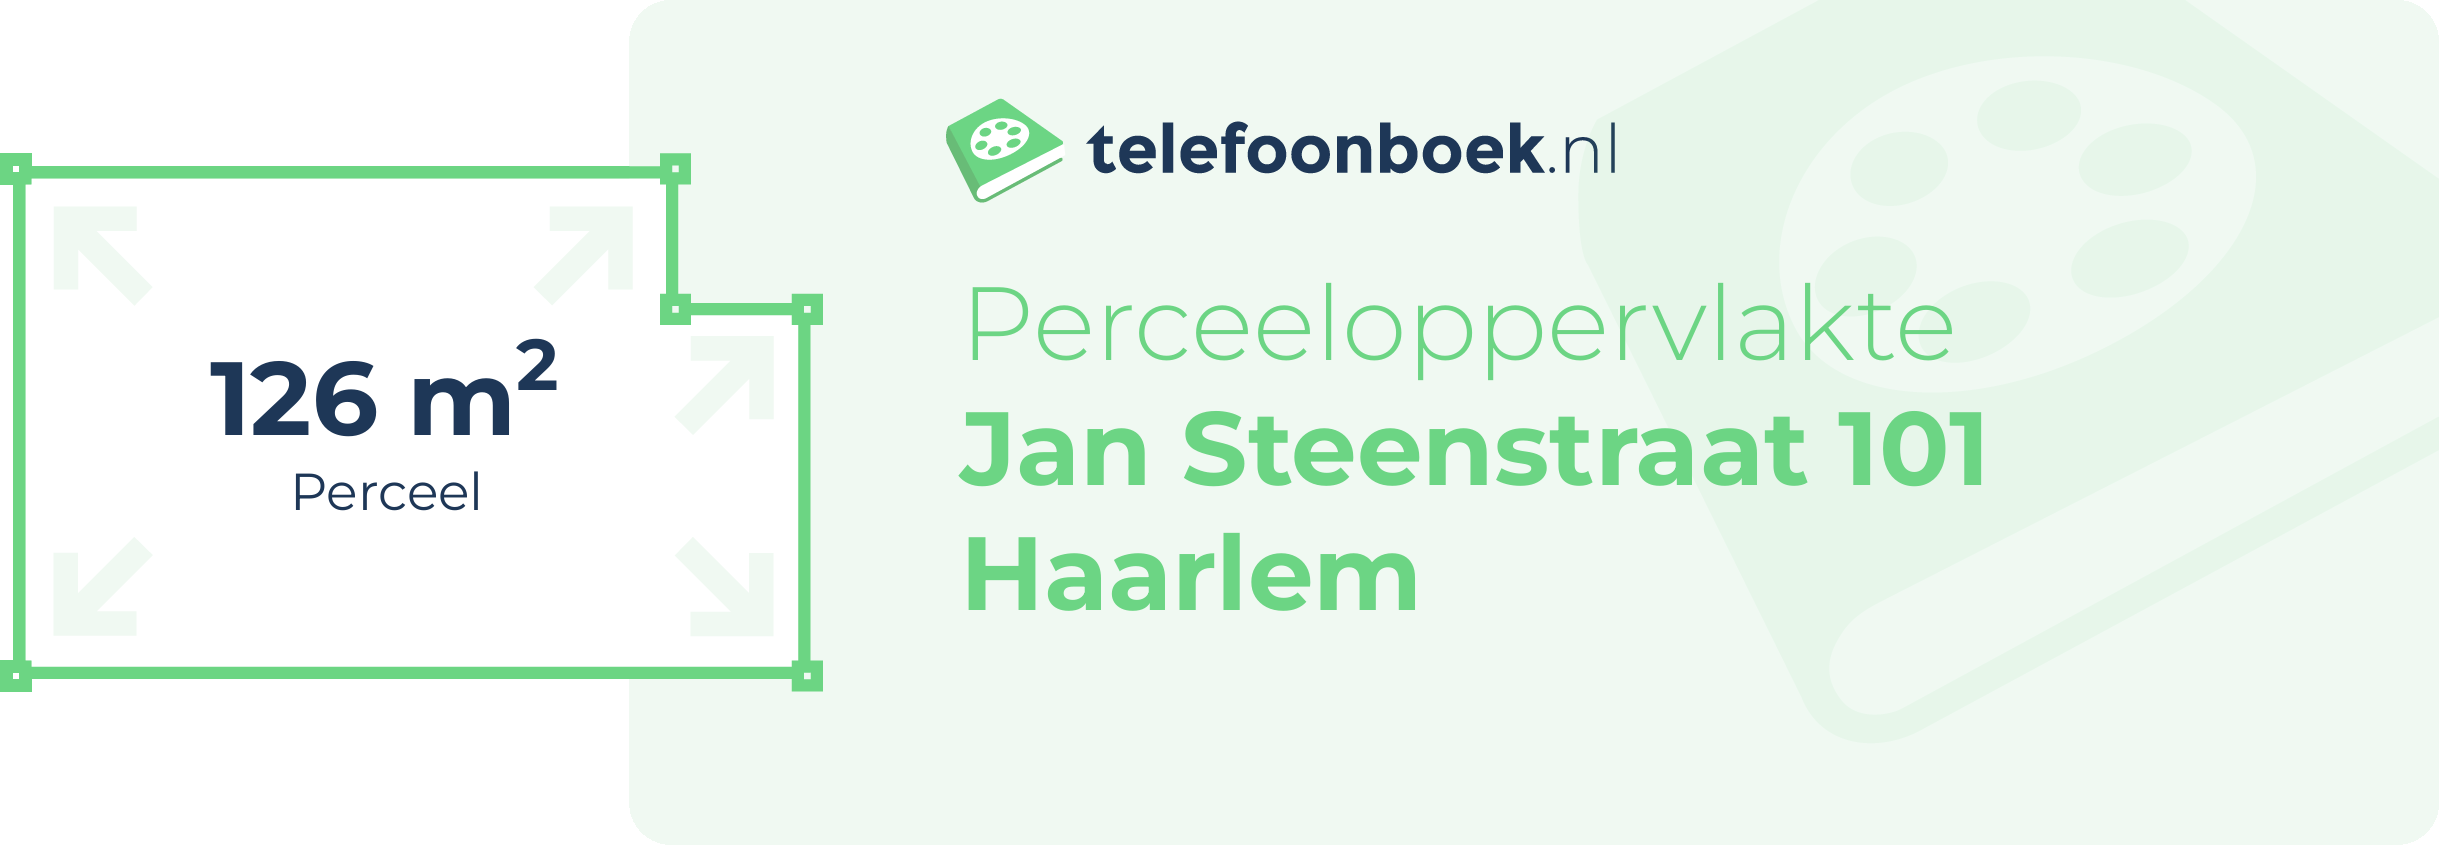 Perceeloppervlakte Jan Steenstraat 101 Haarlem